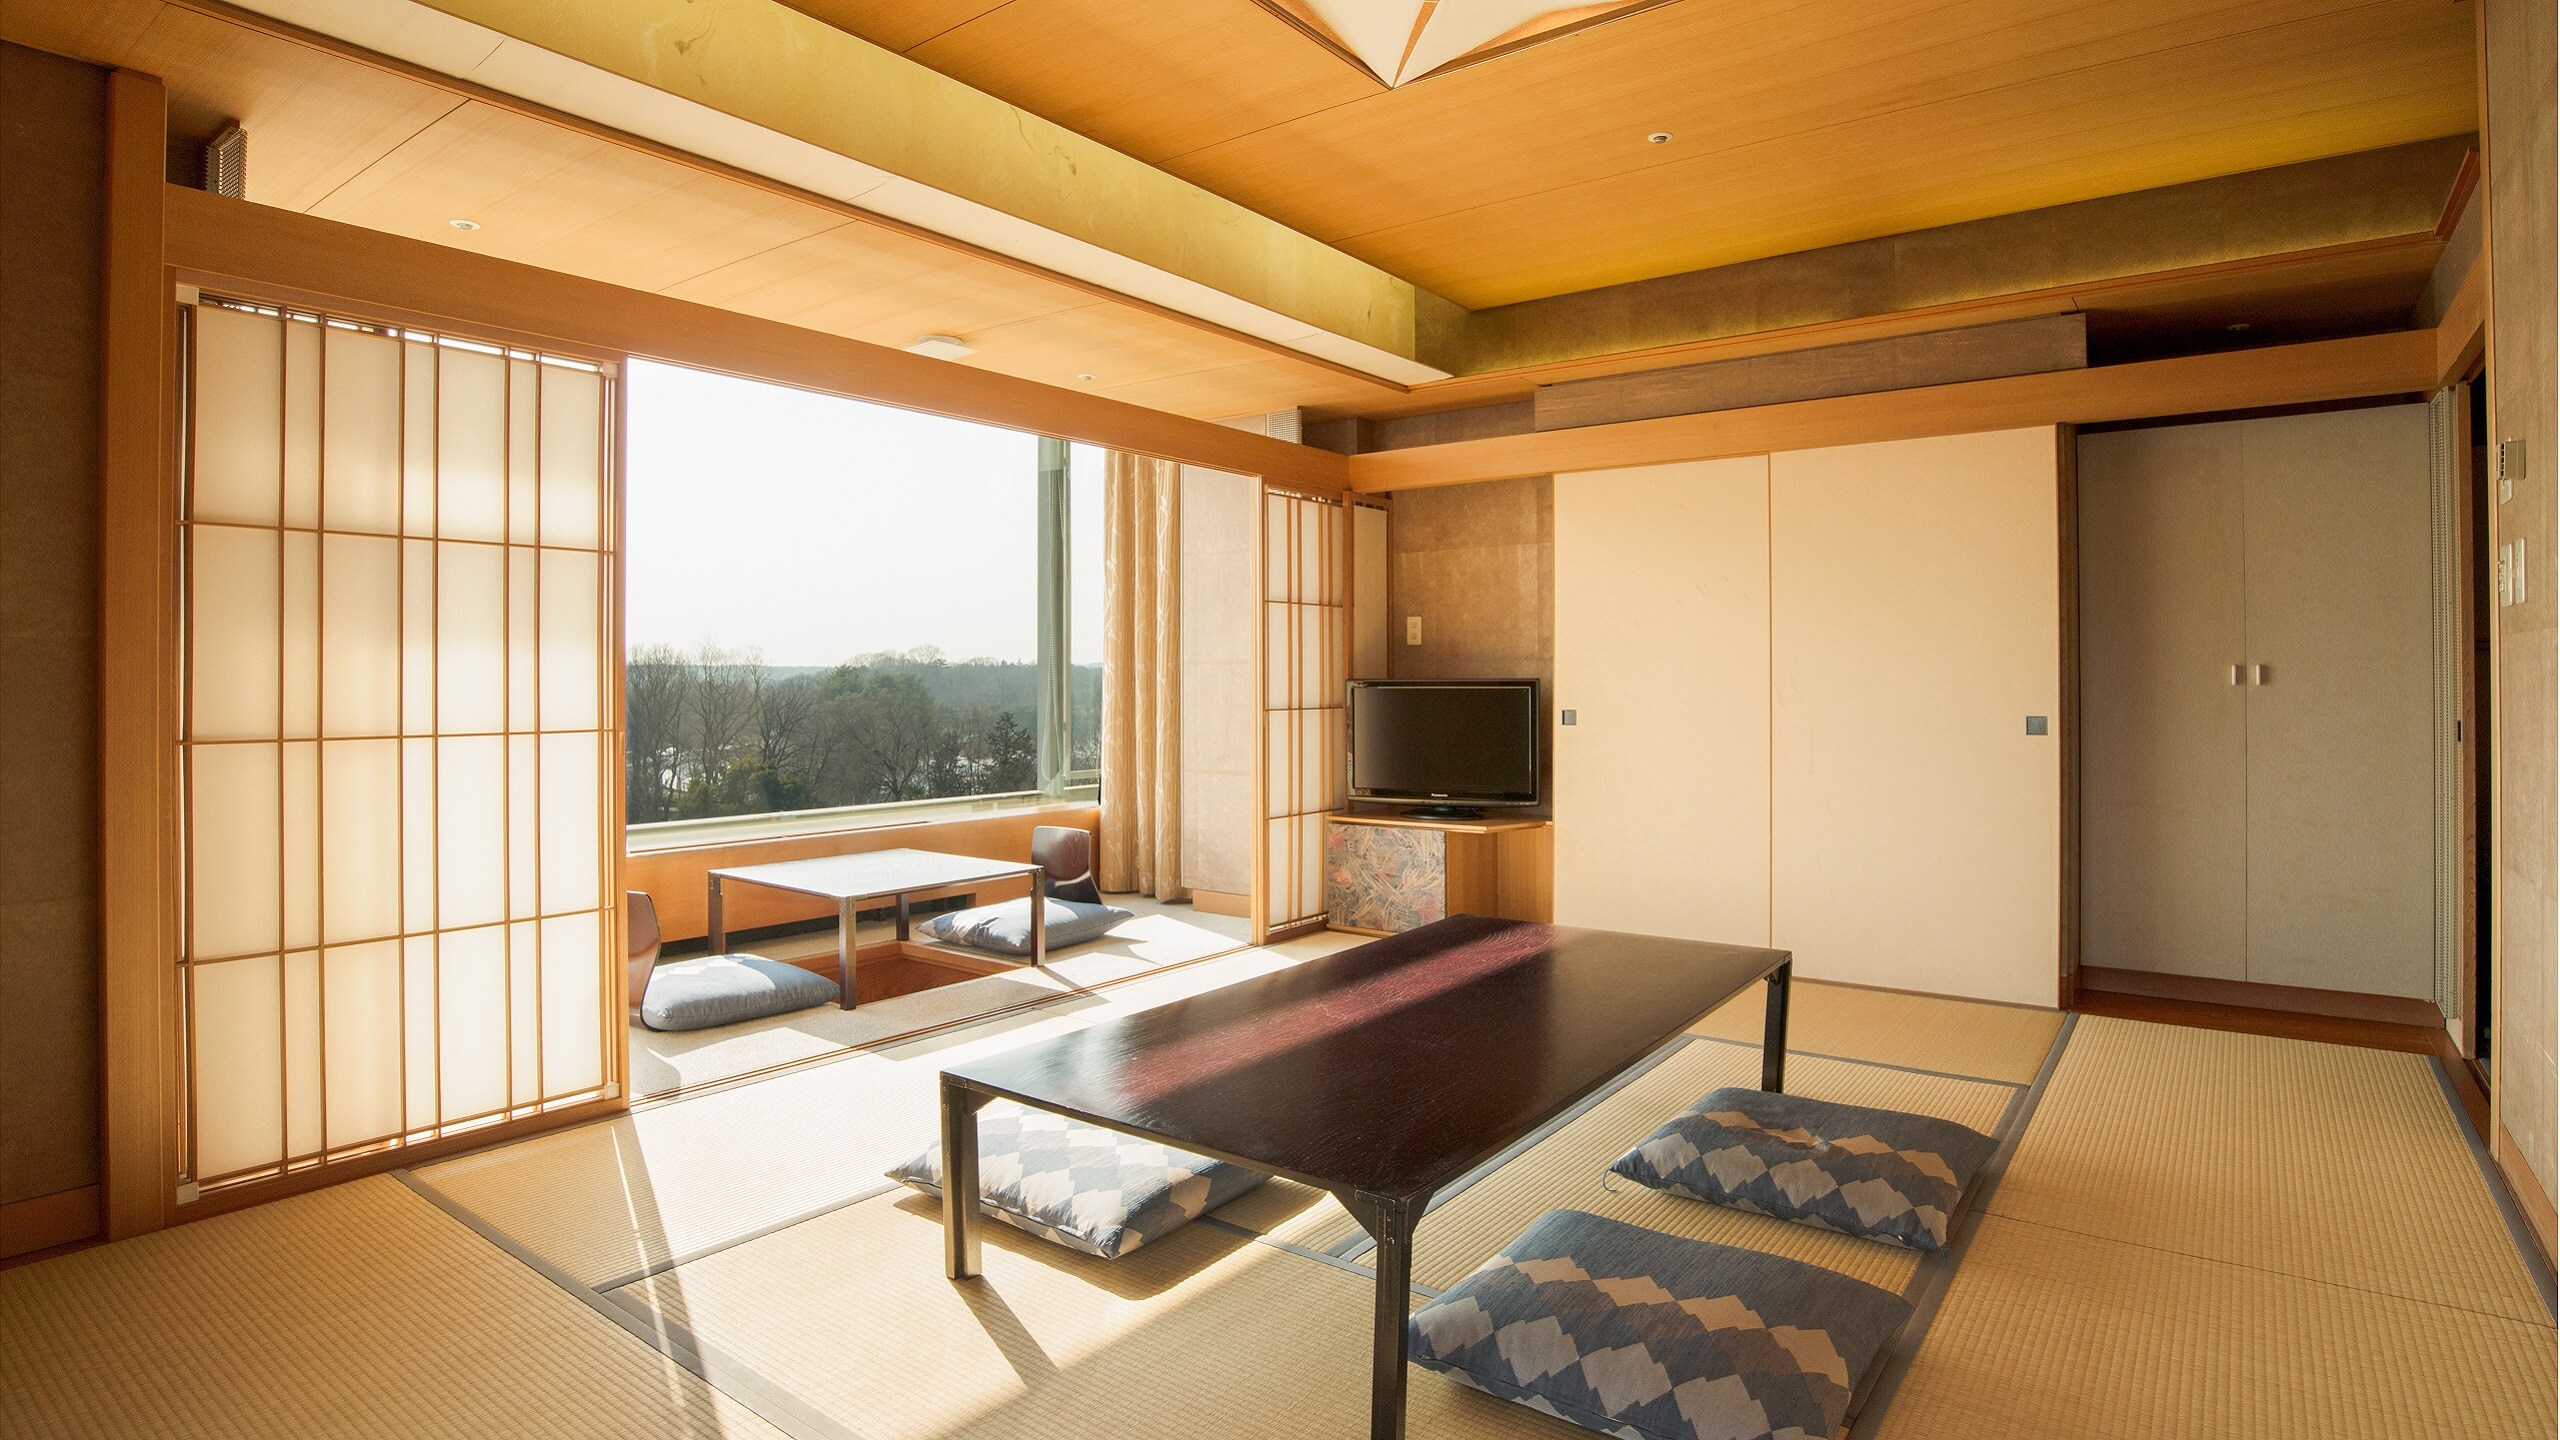 Japanese-Western style room 10 tatami Japanese-style room